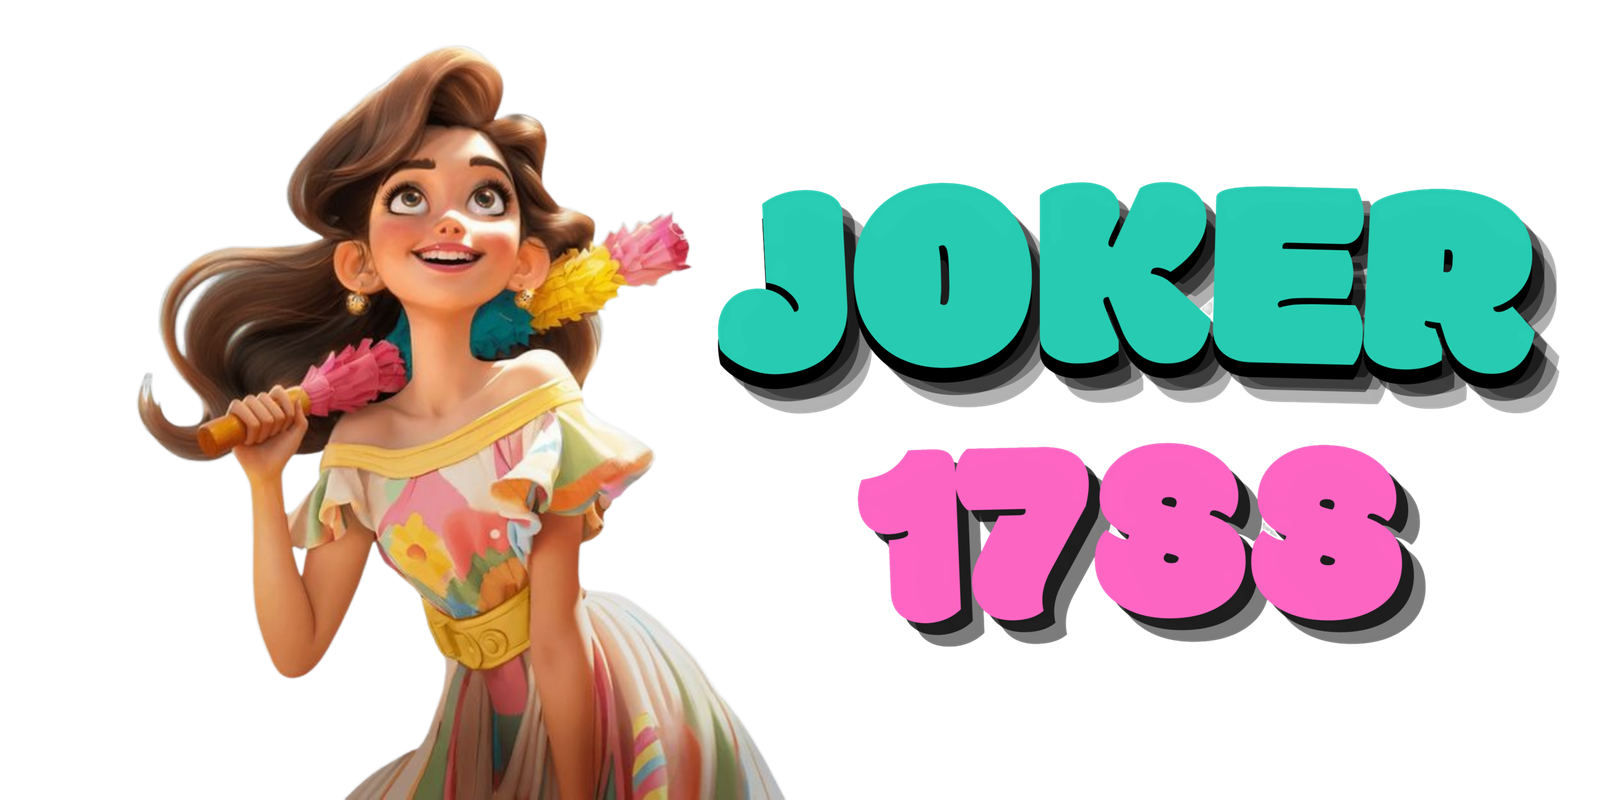 joker1788-logo